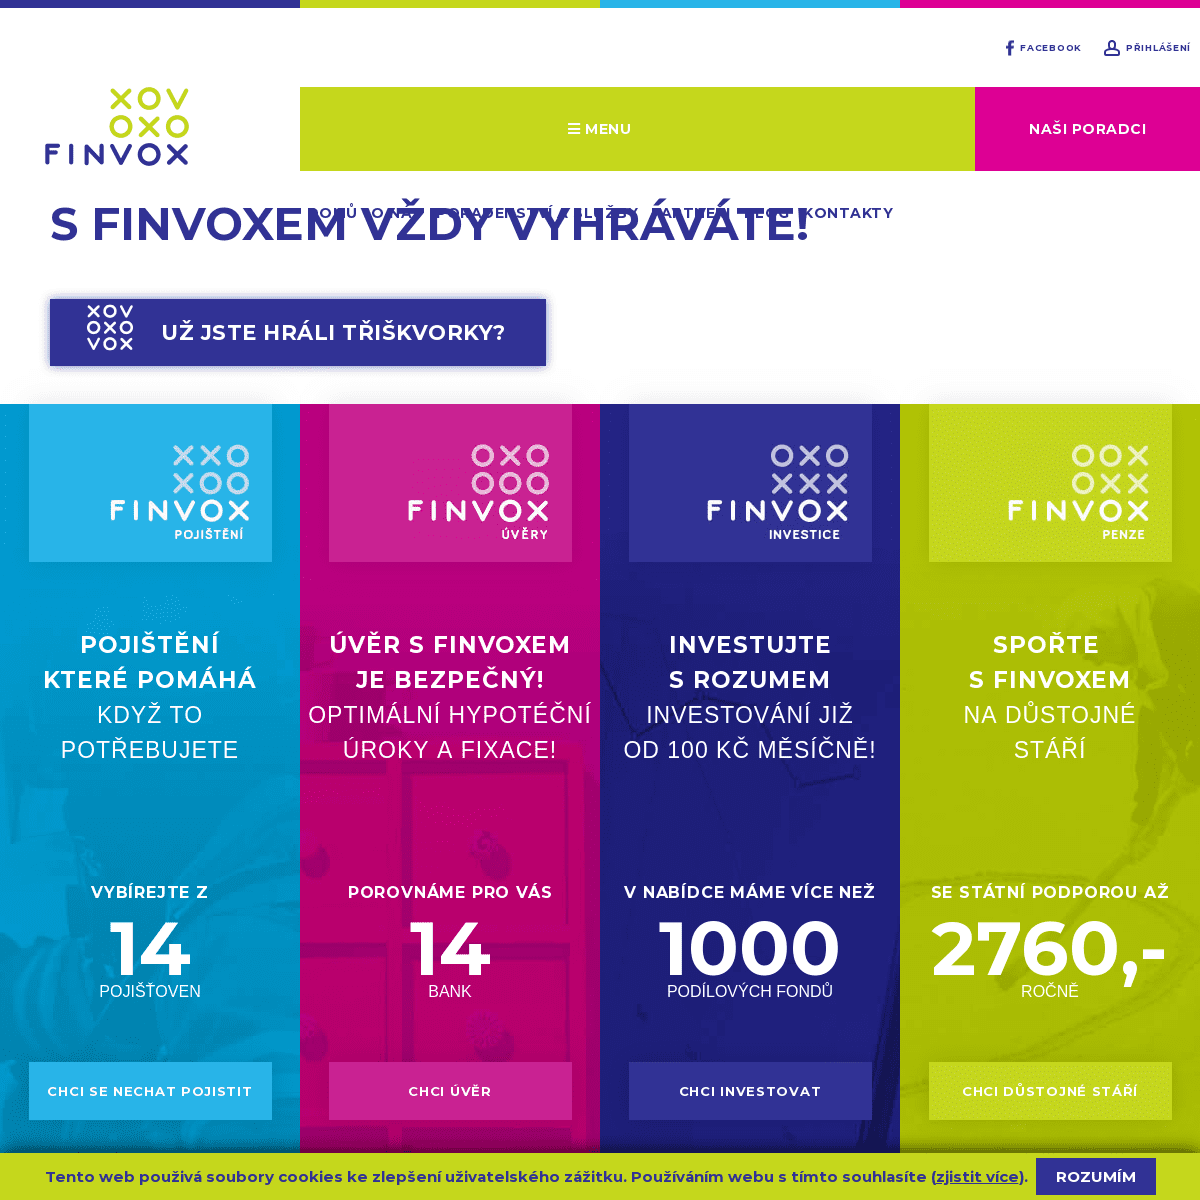 FINVOX Finanční služby s.r.o. | FINVOX